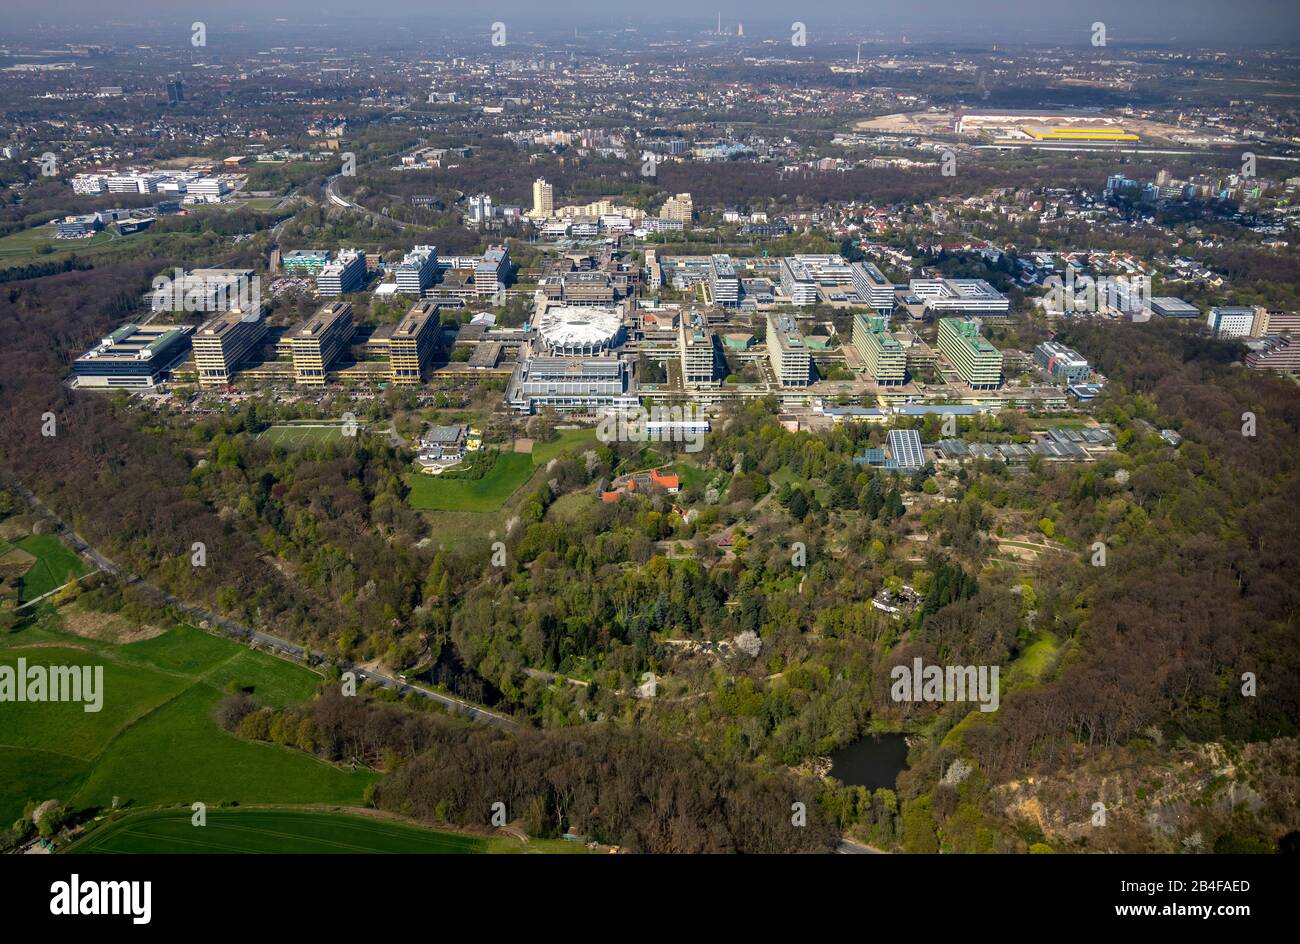 Vue aérienne de la Bochum de l'Université de Ruhr avec le Centre de biomédecine Bochum, RUB avec auditorium, auditorium, le plus grand auditorium de Bochum dans la région de la Ruhr dans l'état fédéral Rhénanie-du-Nord-Westphalie, Allemagne Banque D'Images